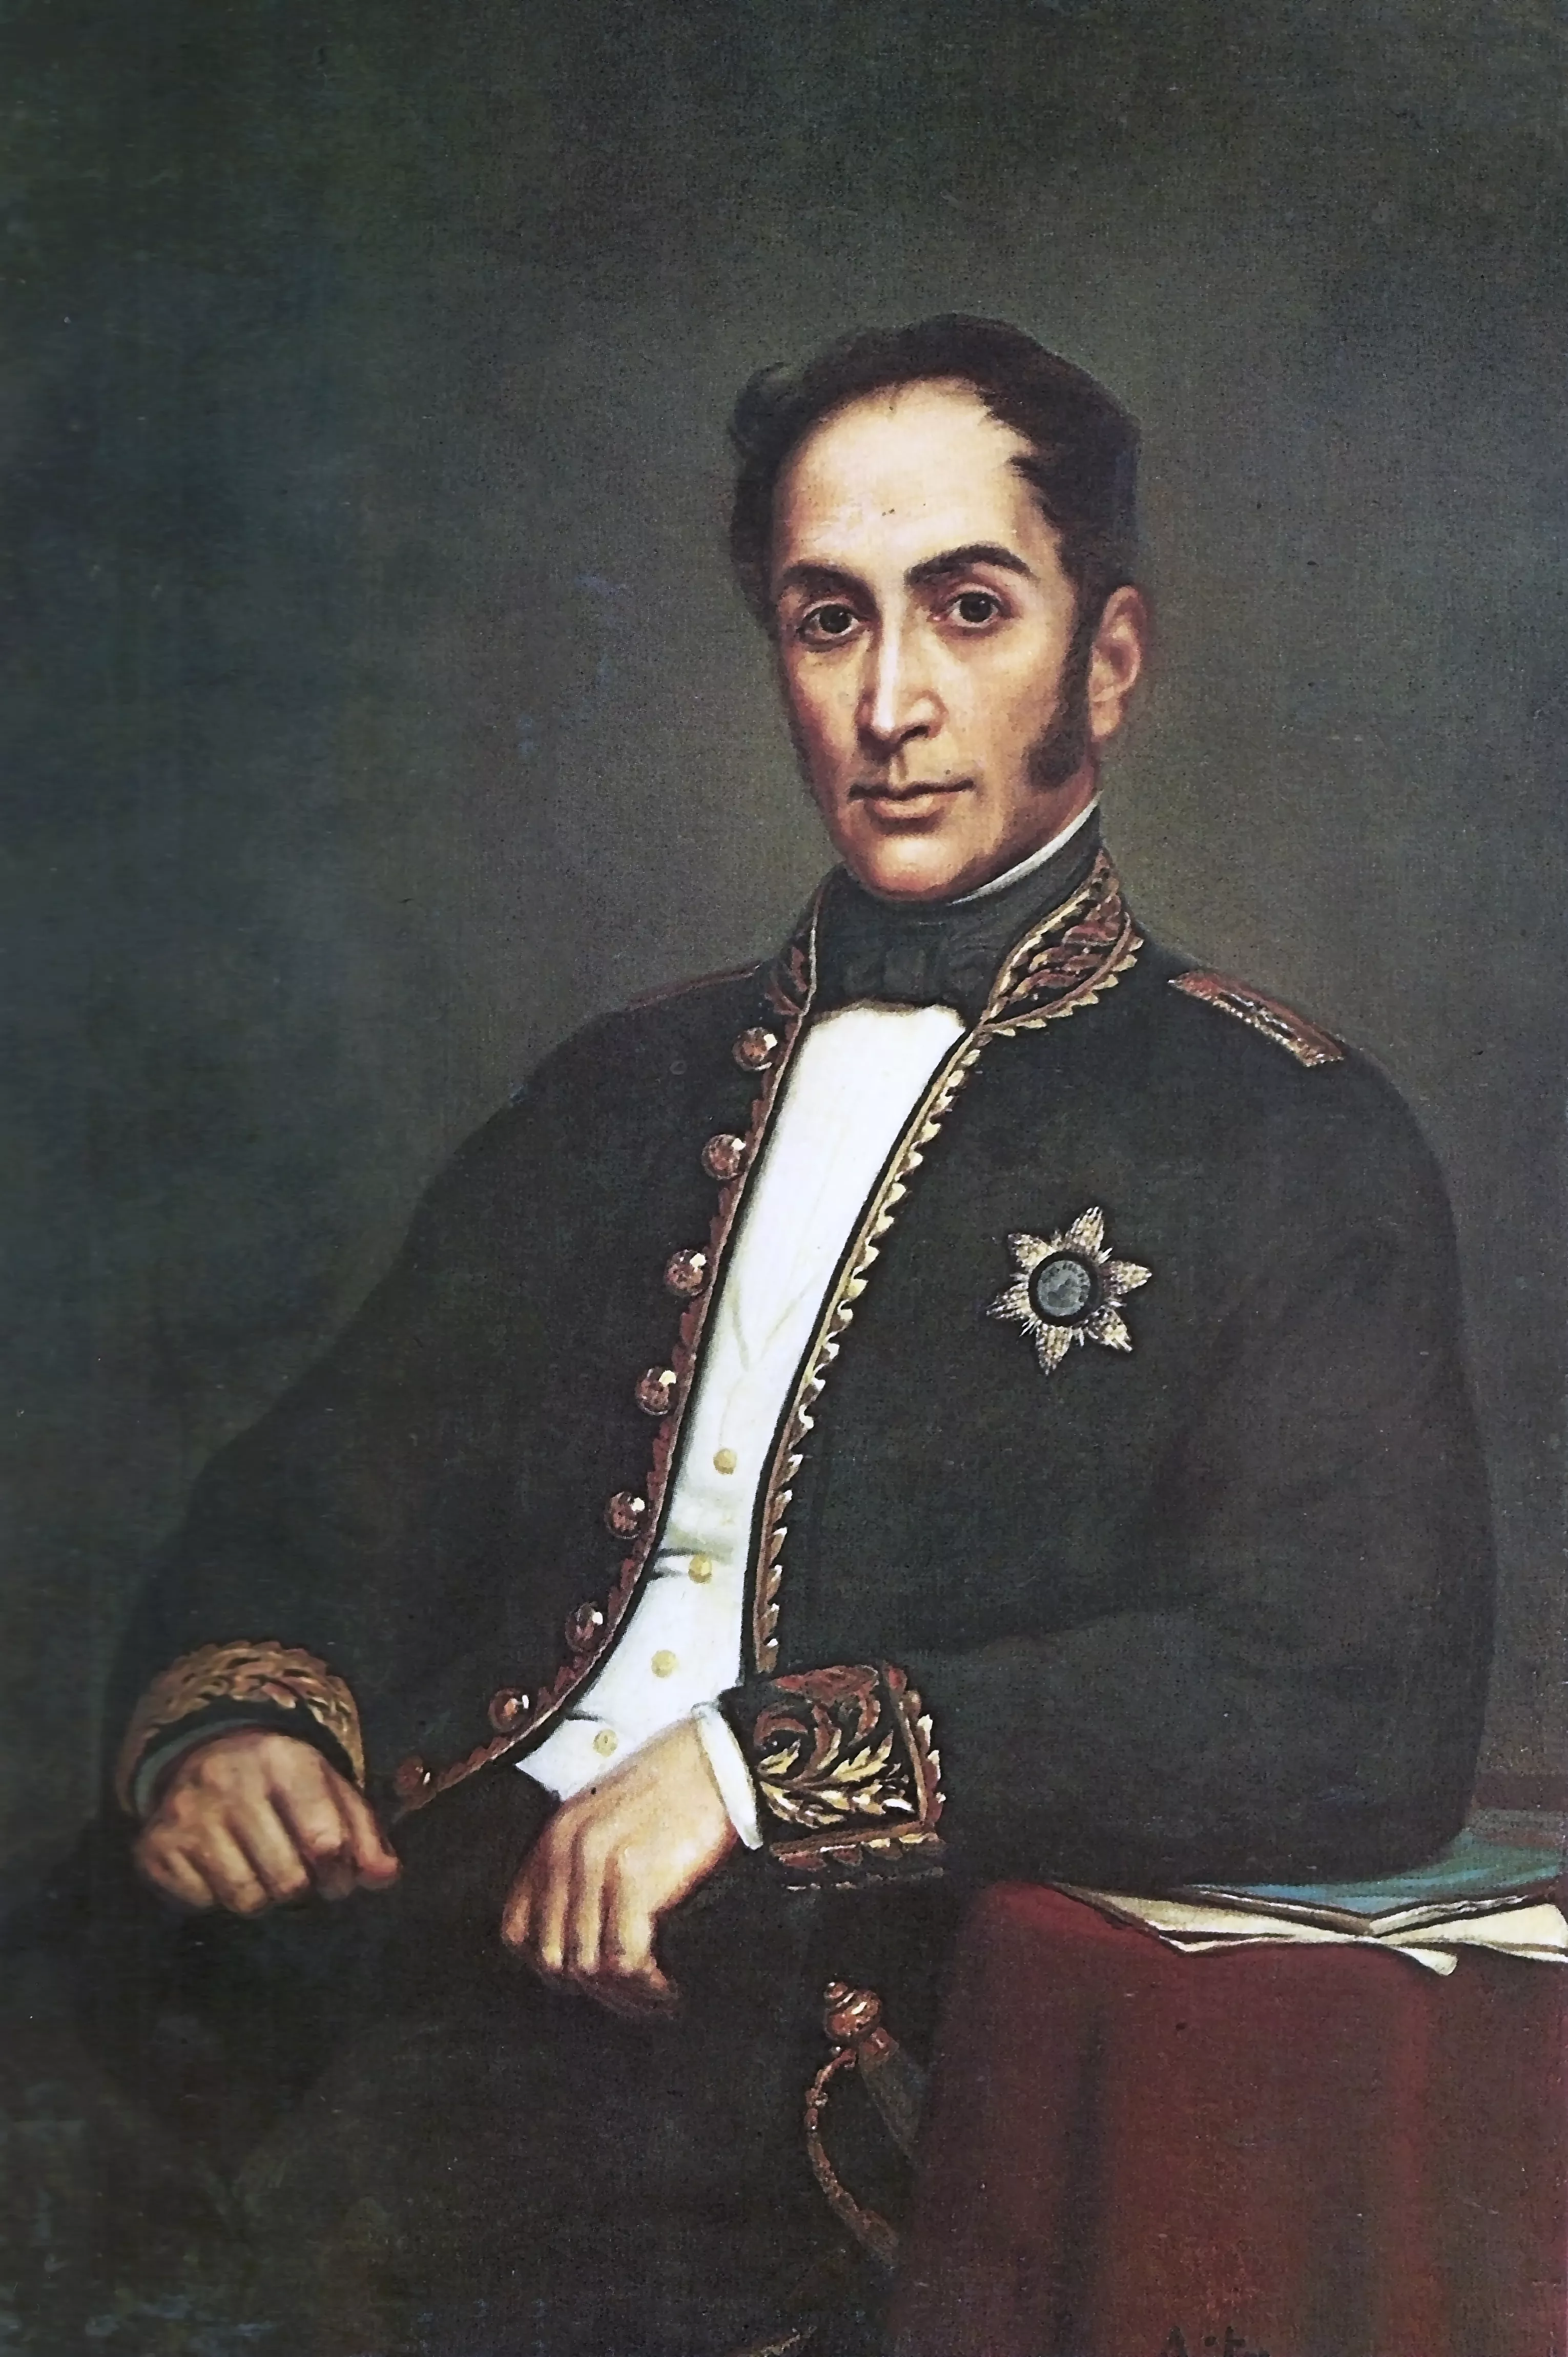 Retrat de Simón Bolívar